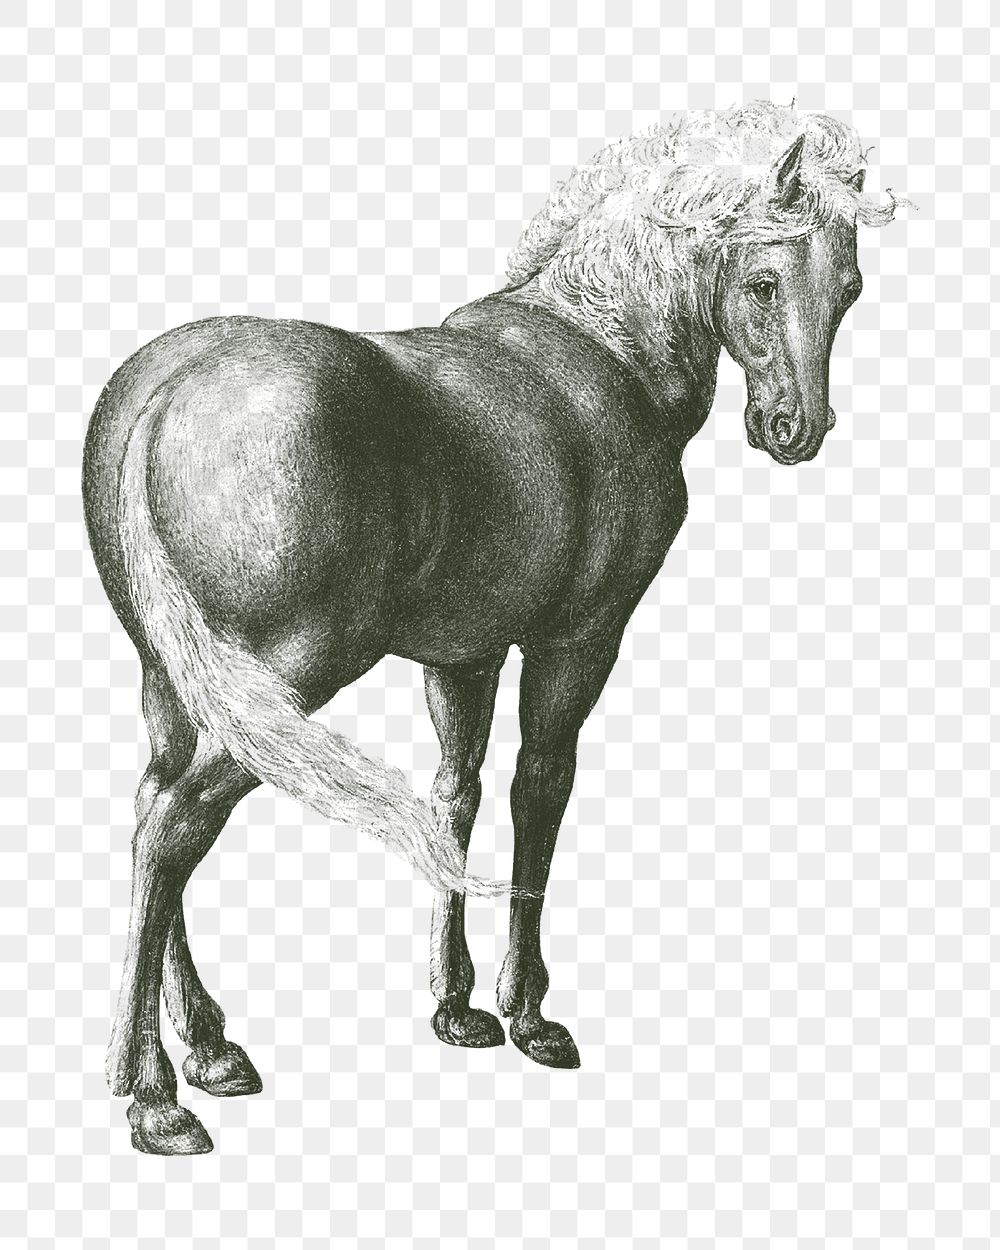 Horse png vintage illustration, transparent background